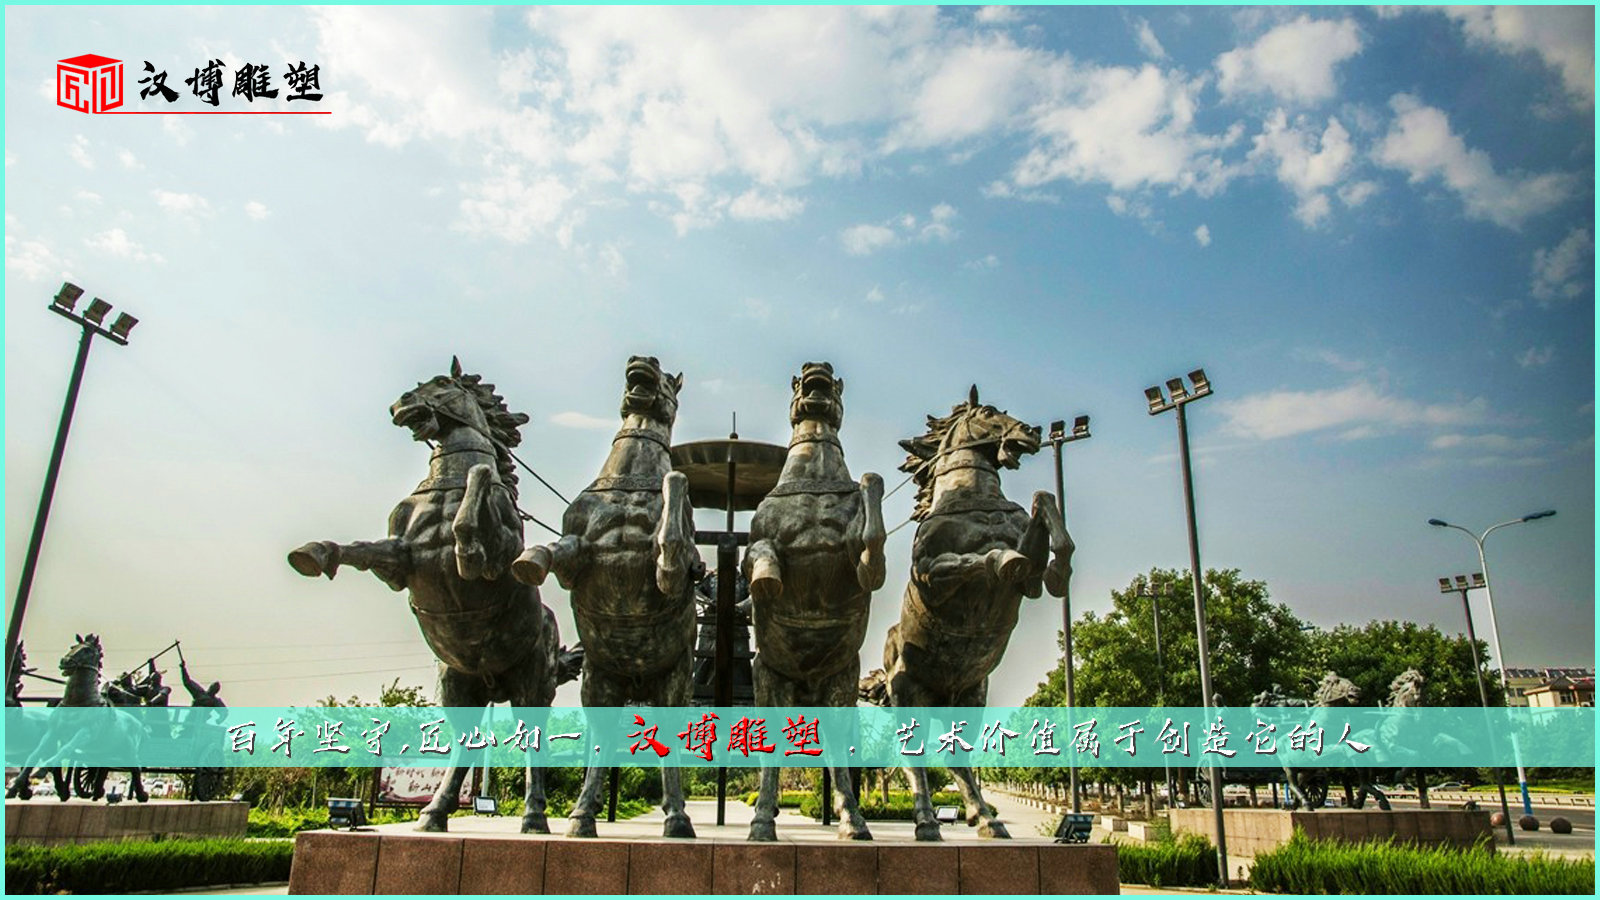 将军骑马雕塑,历史名人雕塑,战国时期人物雕塑